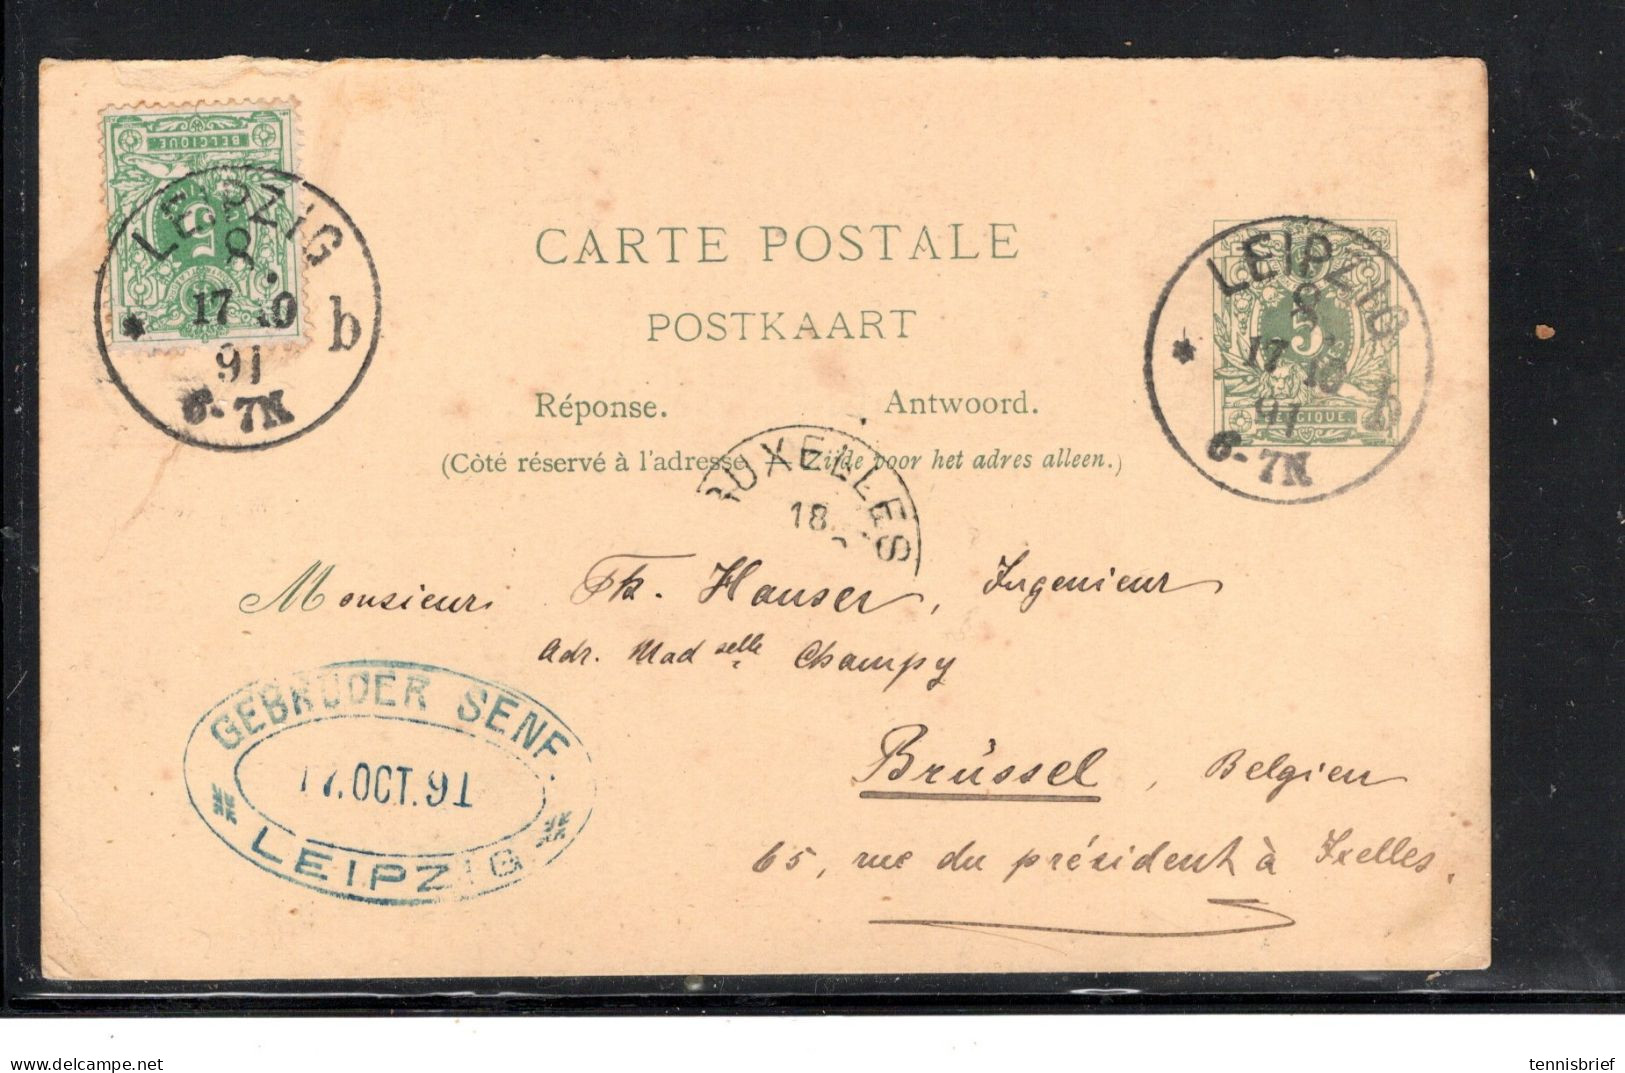 1891 ,5 C.sur Entier 5 C ,cachet Allemand " LEIPZIG " Tres Claire,carte Postal Reponse Retur A Bruxelles ,rare  #1578 - 1869-1888 Lion Couché (Liegender Löwe)